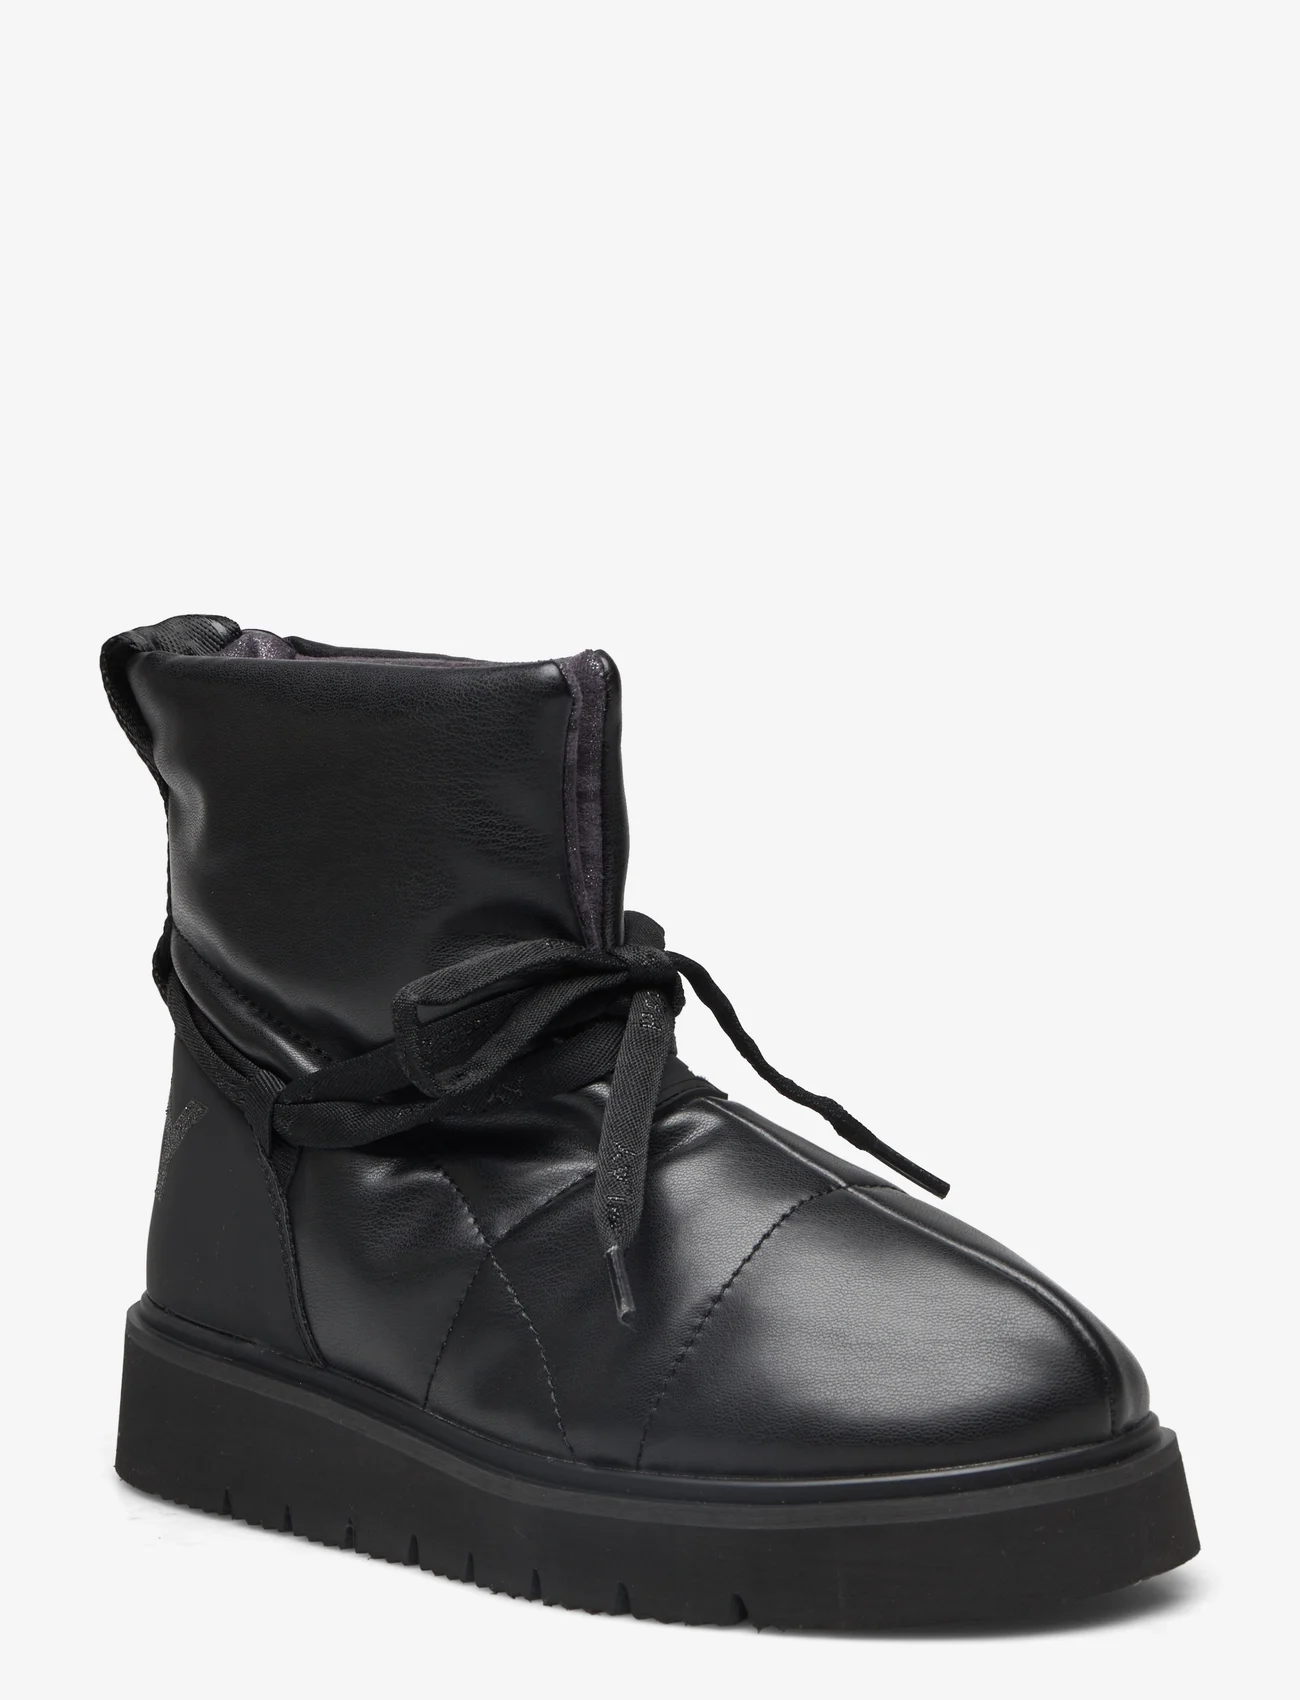 Replay - MELROSE SKIN 2 - Žieminiai batai - black - 0